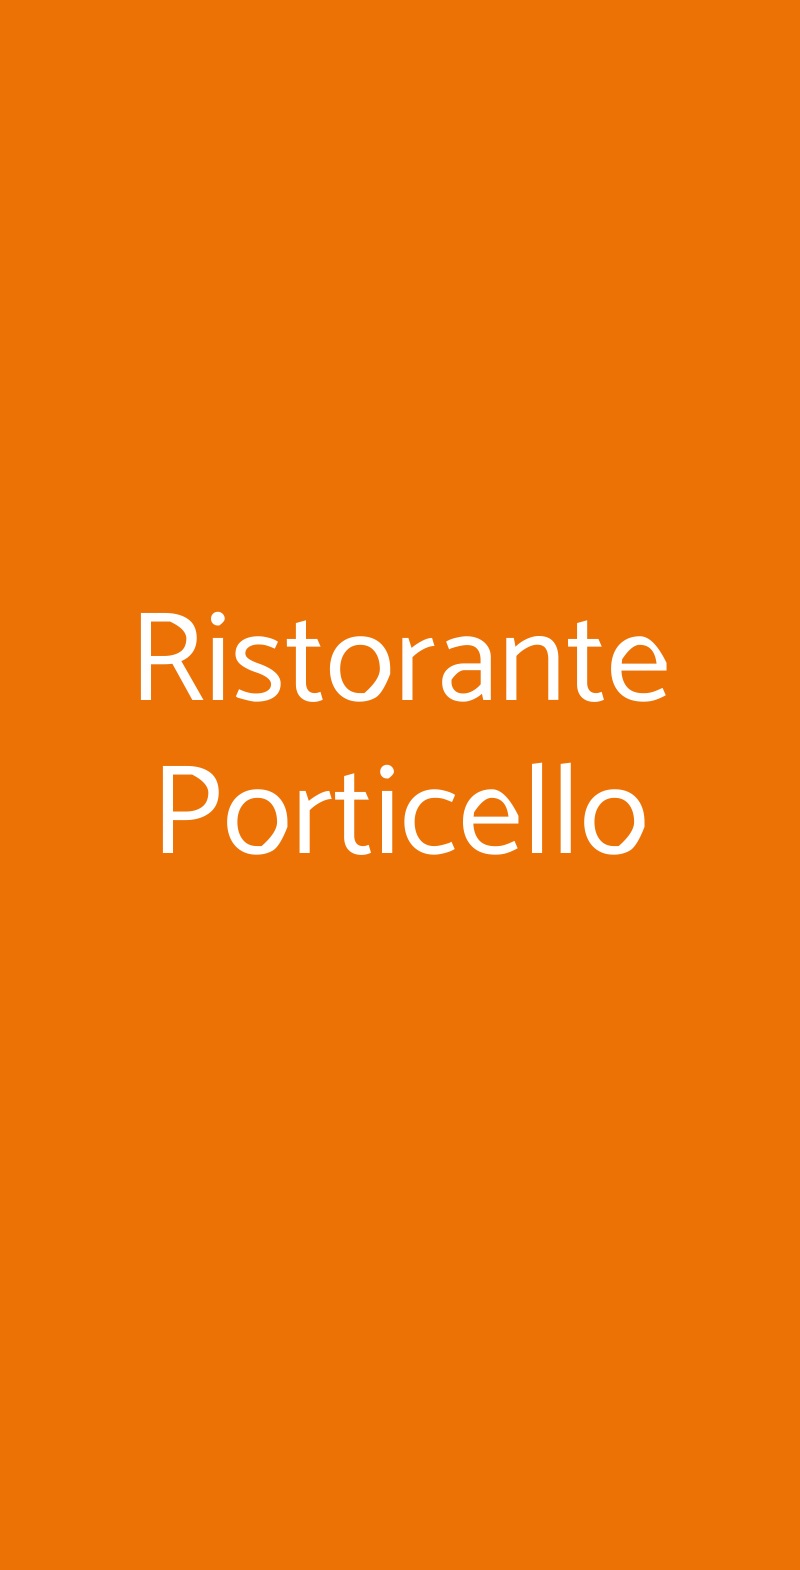 Ristorante Porticello Milano menù 1 pagina